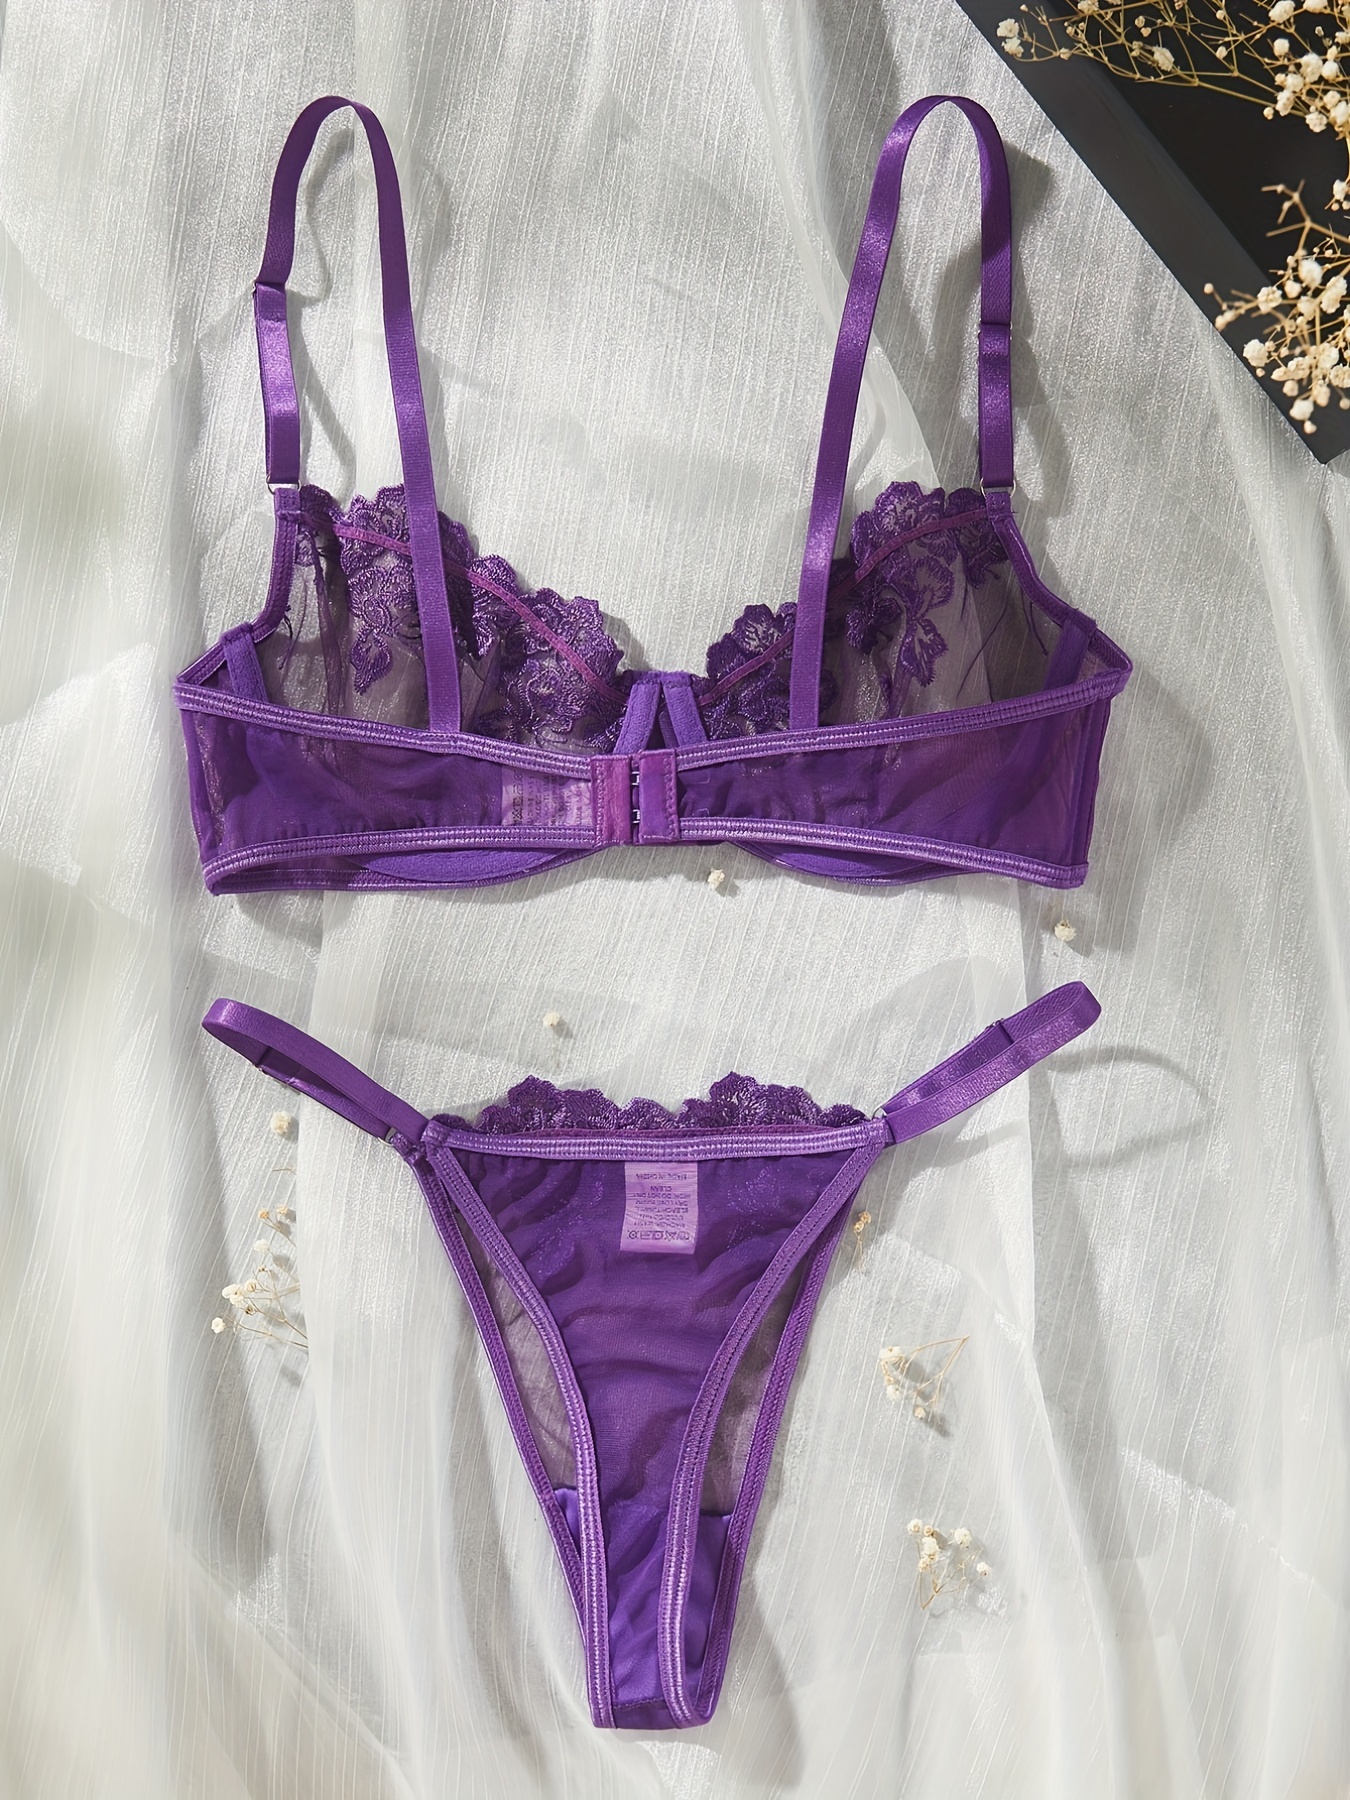 Lingerie For Women Women's Purple Lingerie Lace Embroidery Flower Bra Set  Underwear Women